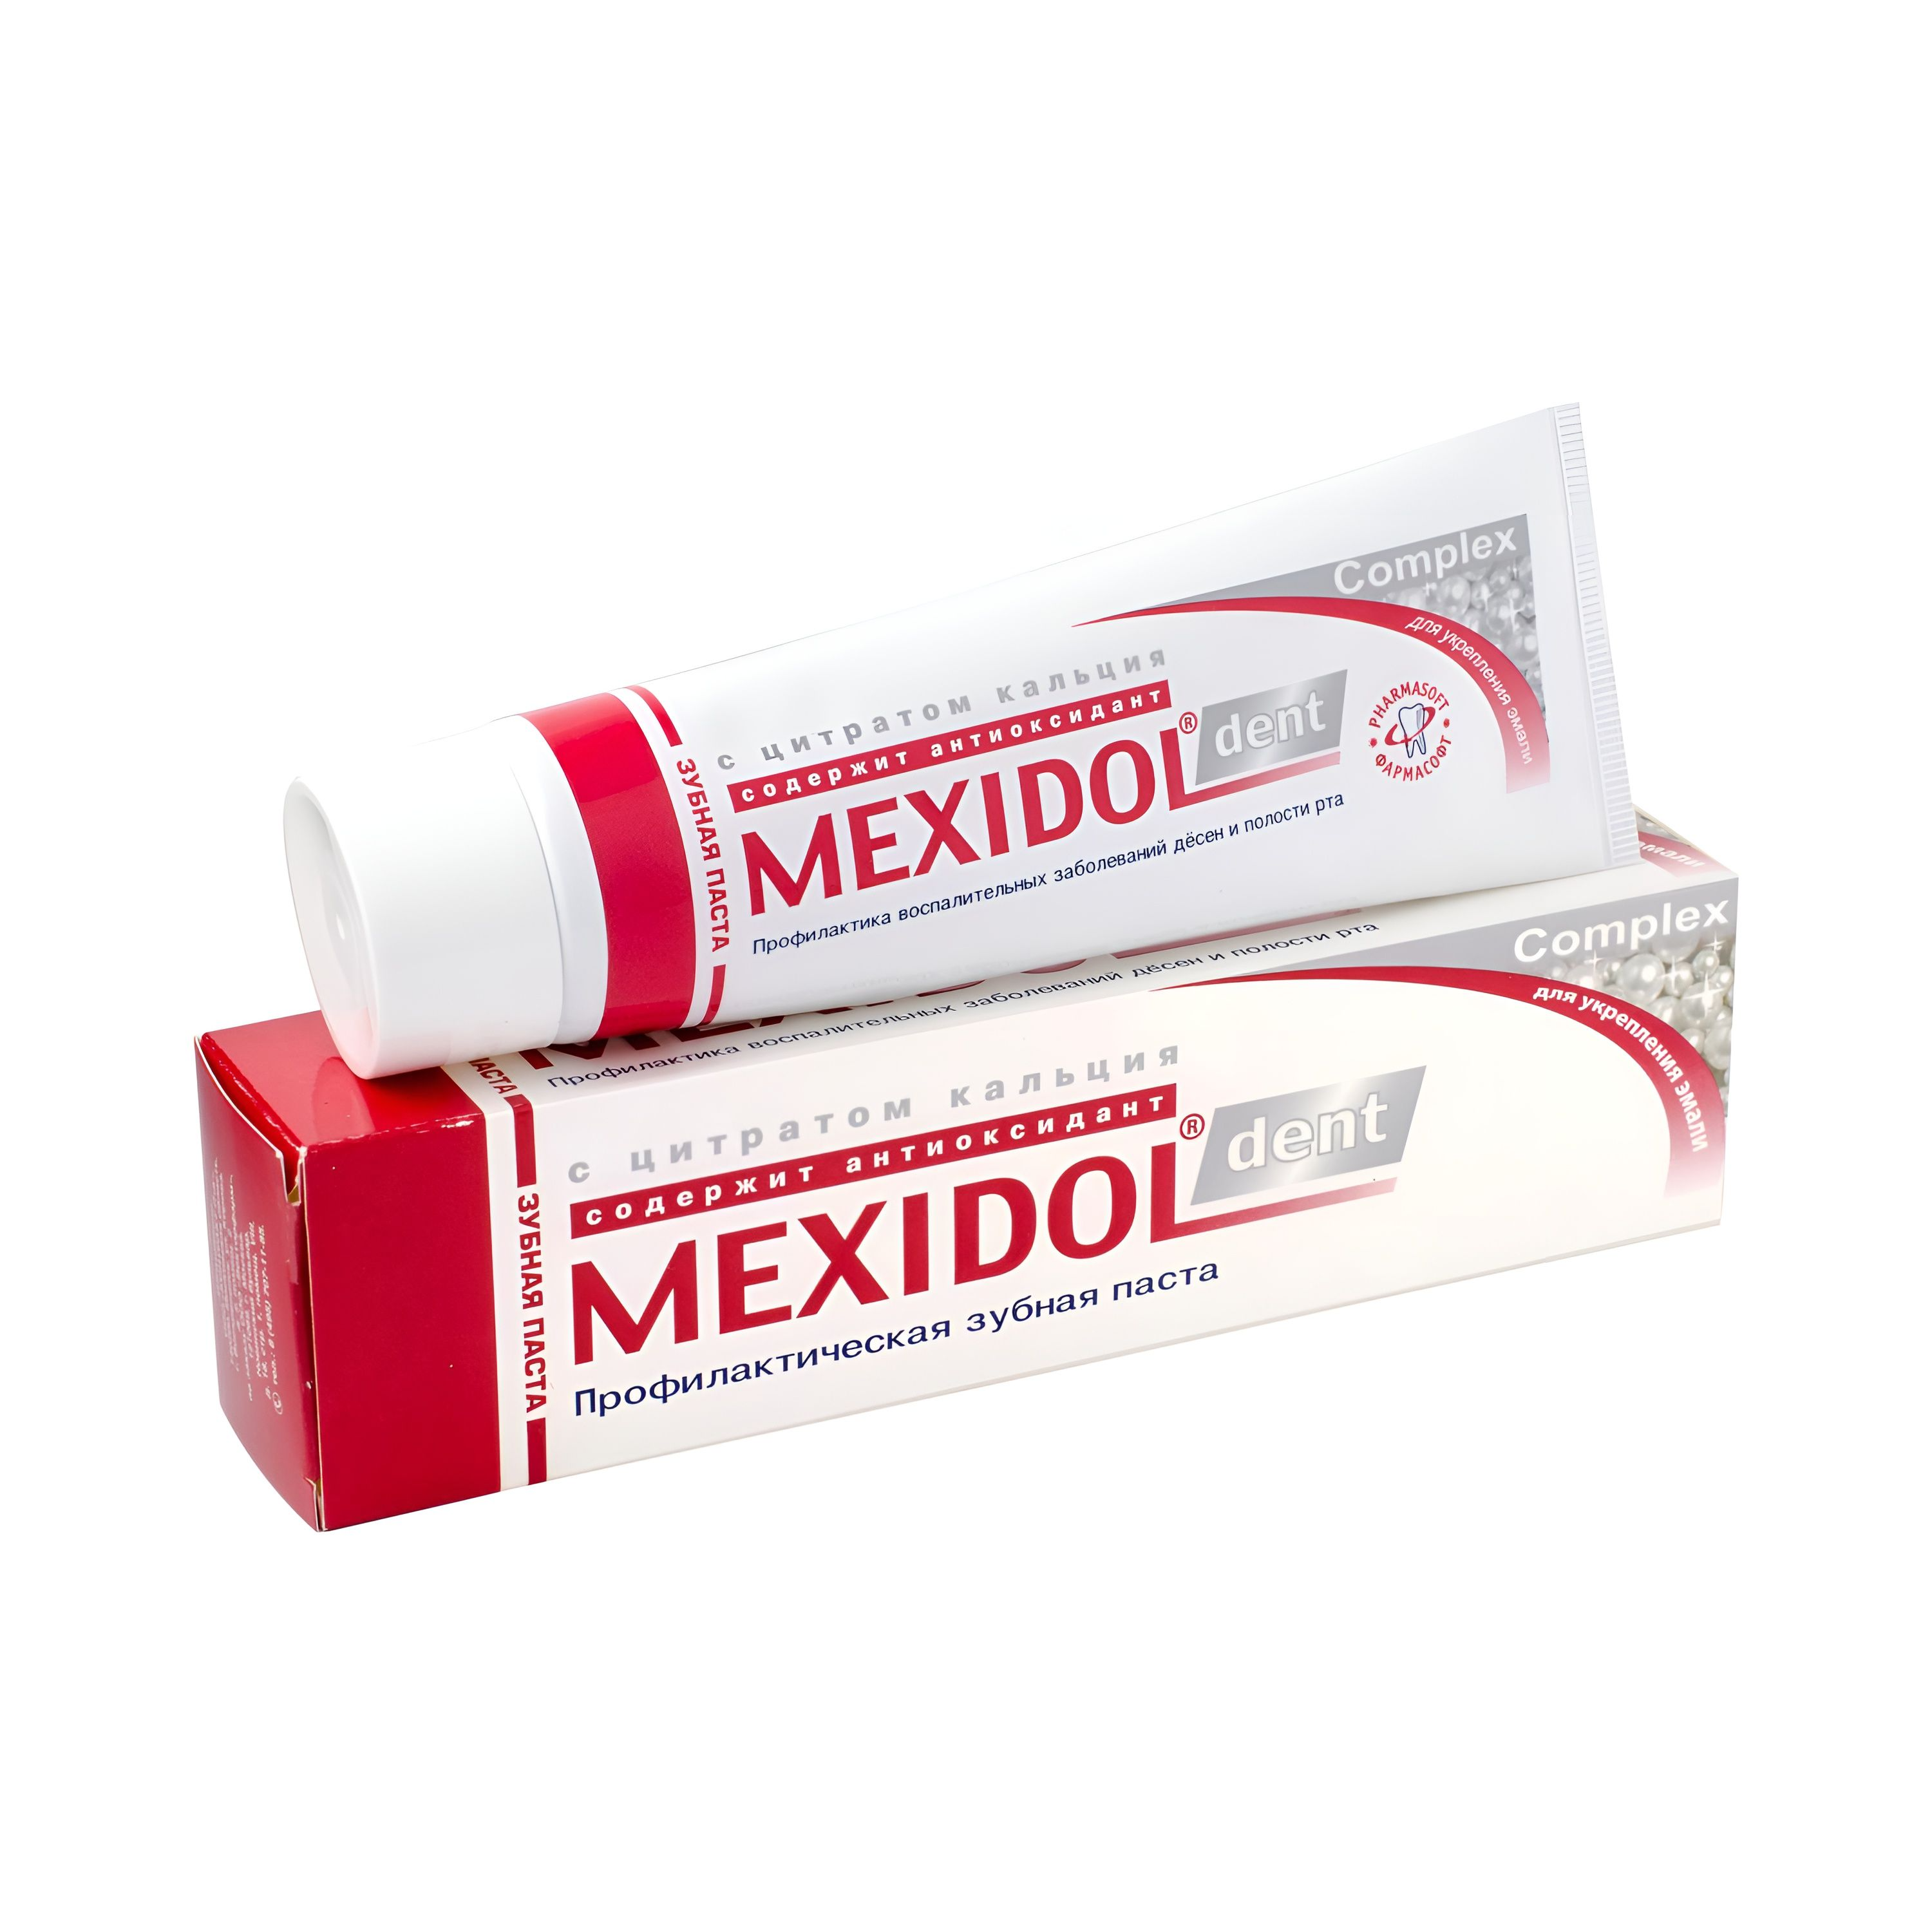 Мексидол Дент Комплекс, зубная паста, 65 г з паста мексидол дент сенситив 65г